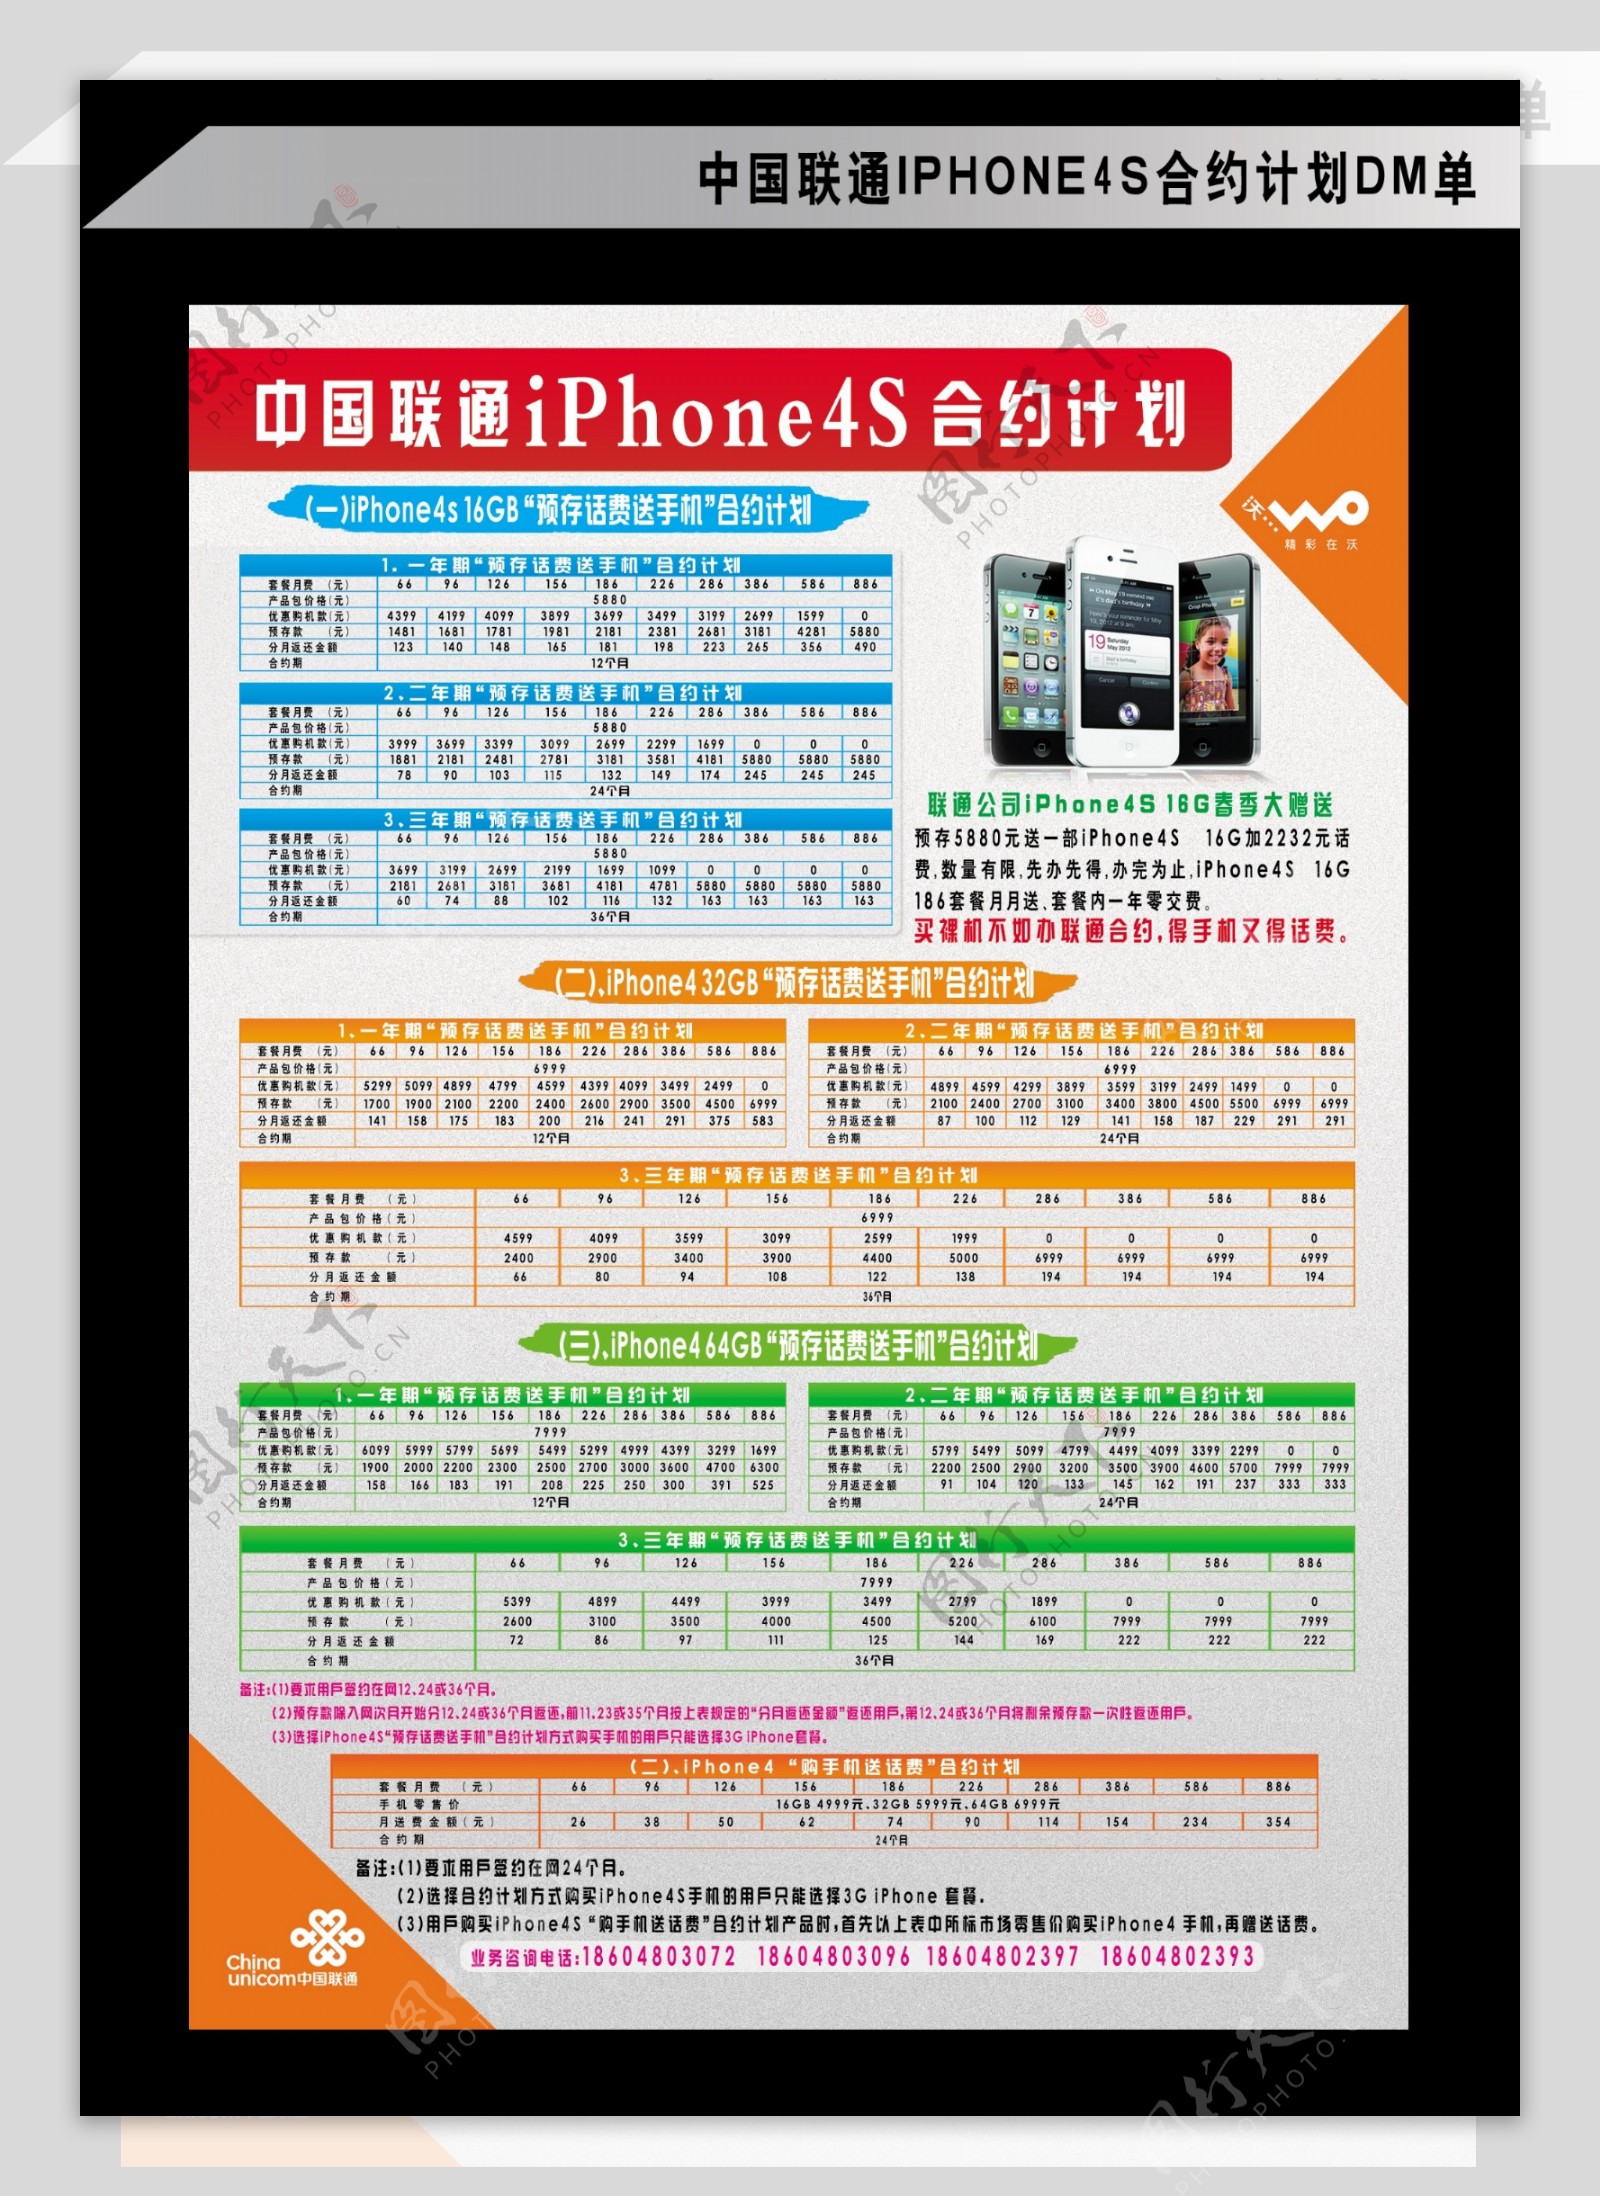 联通iphone4s合约计划图片